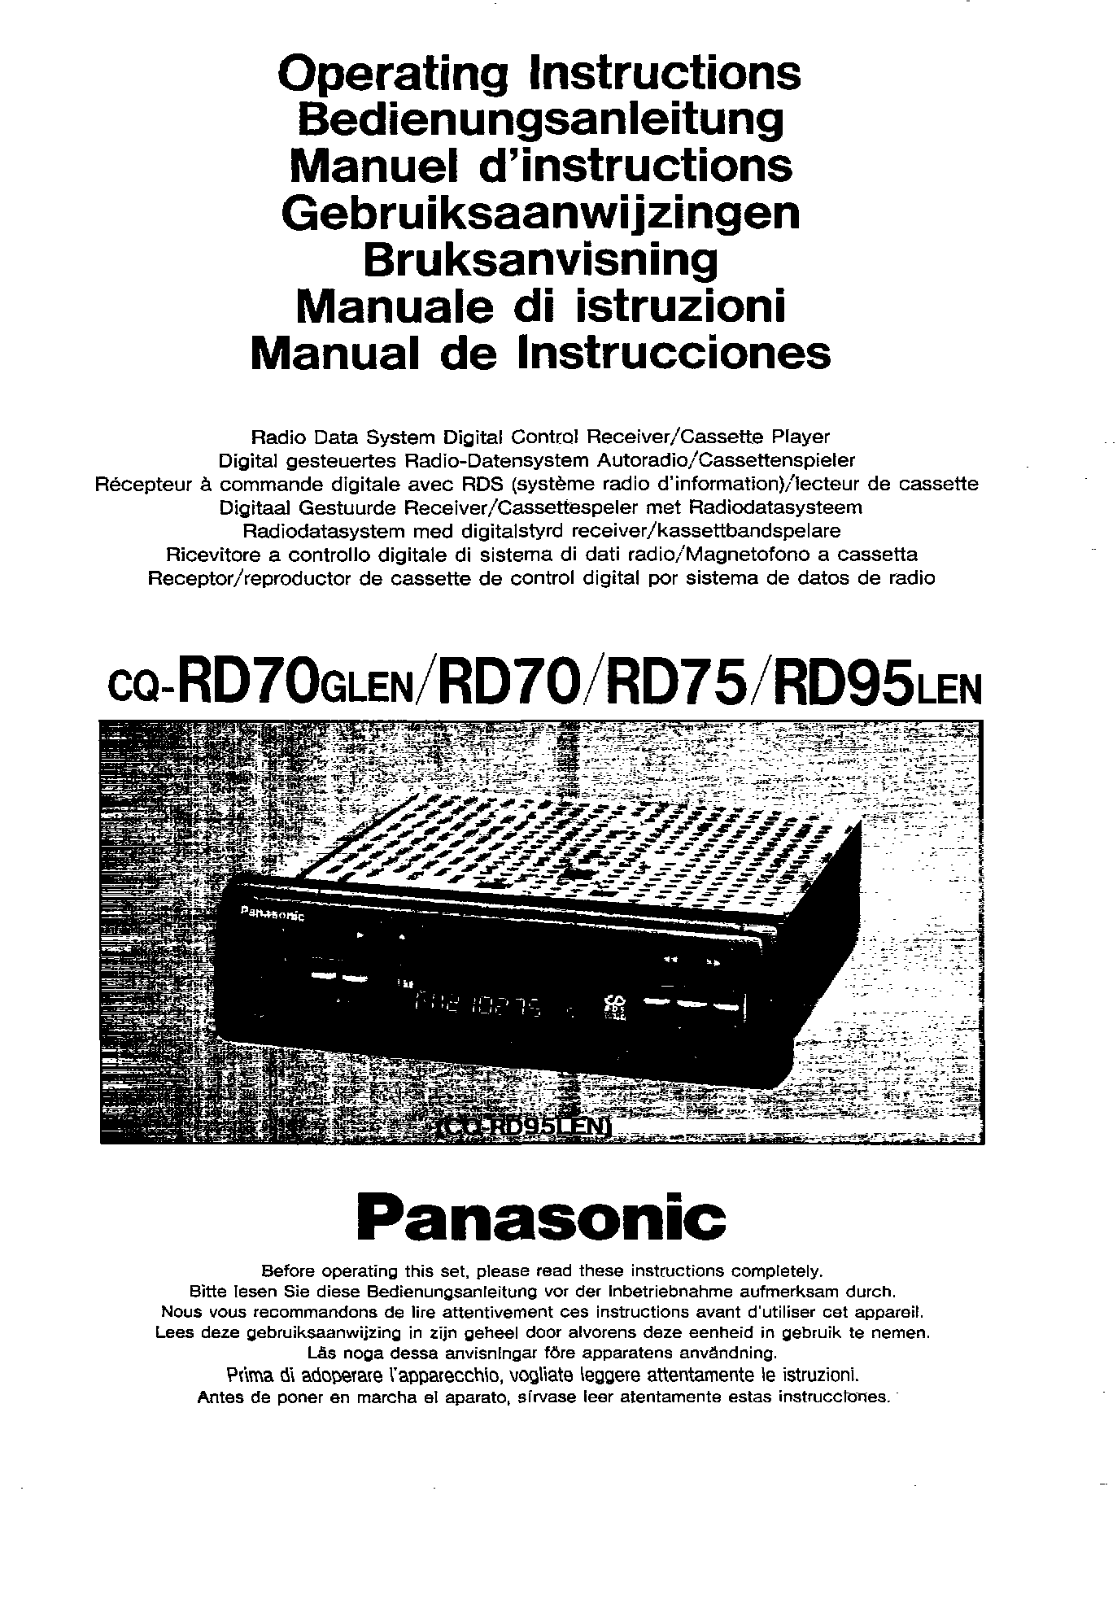 Panasonic CQ-RD95, CQ-RD70 User Manual